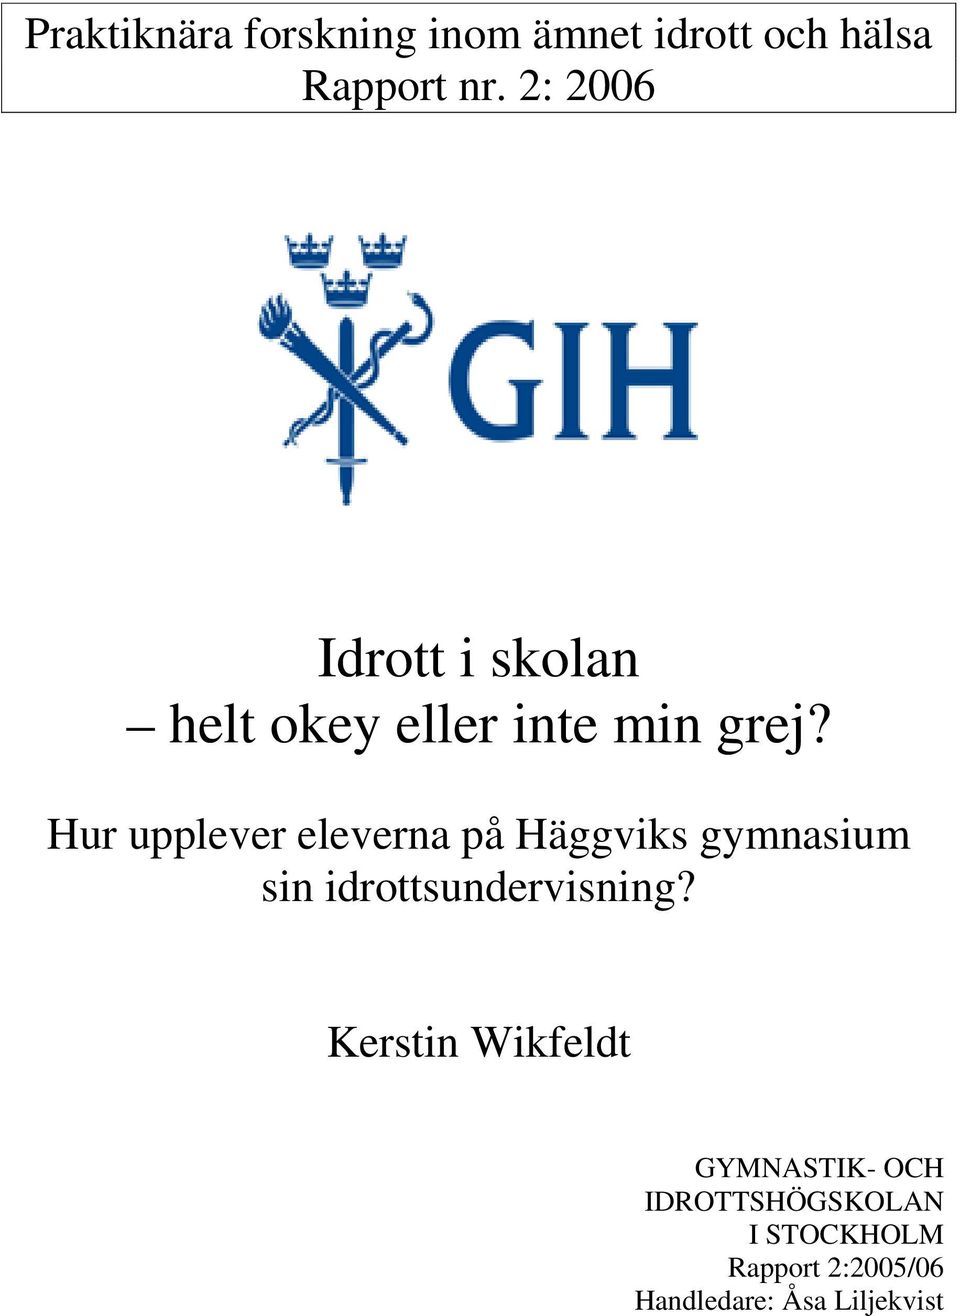 Hur upplever eleverna på Häggviks gymnasium sin idrottsundervisning?